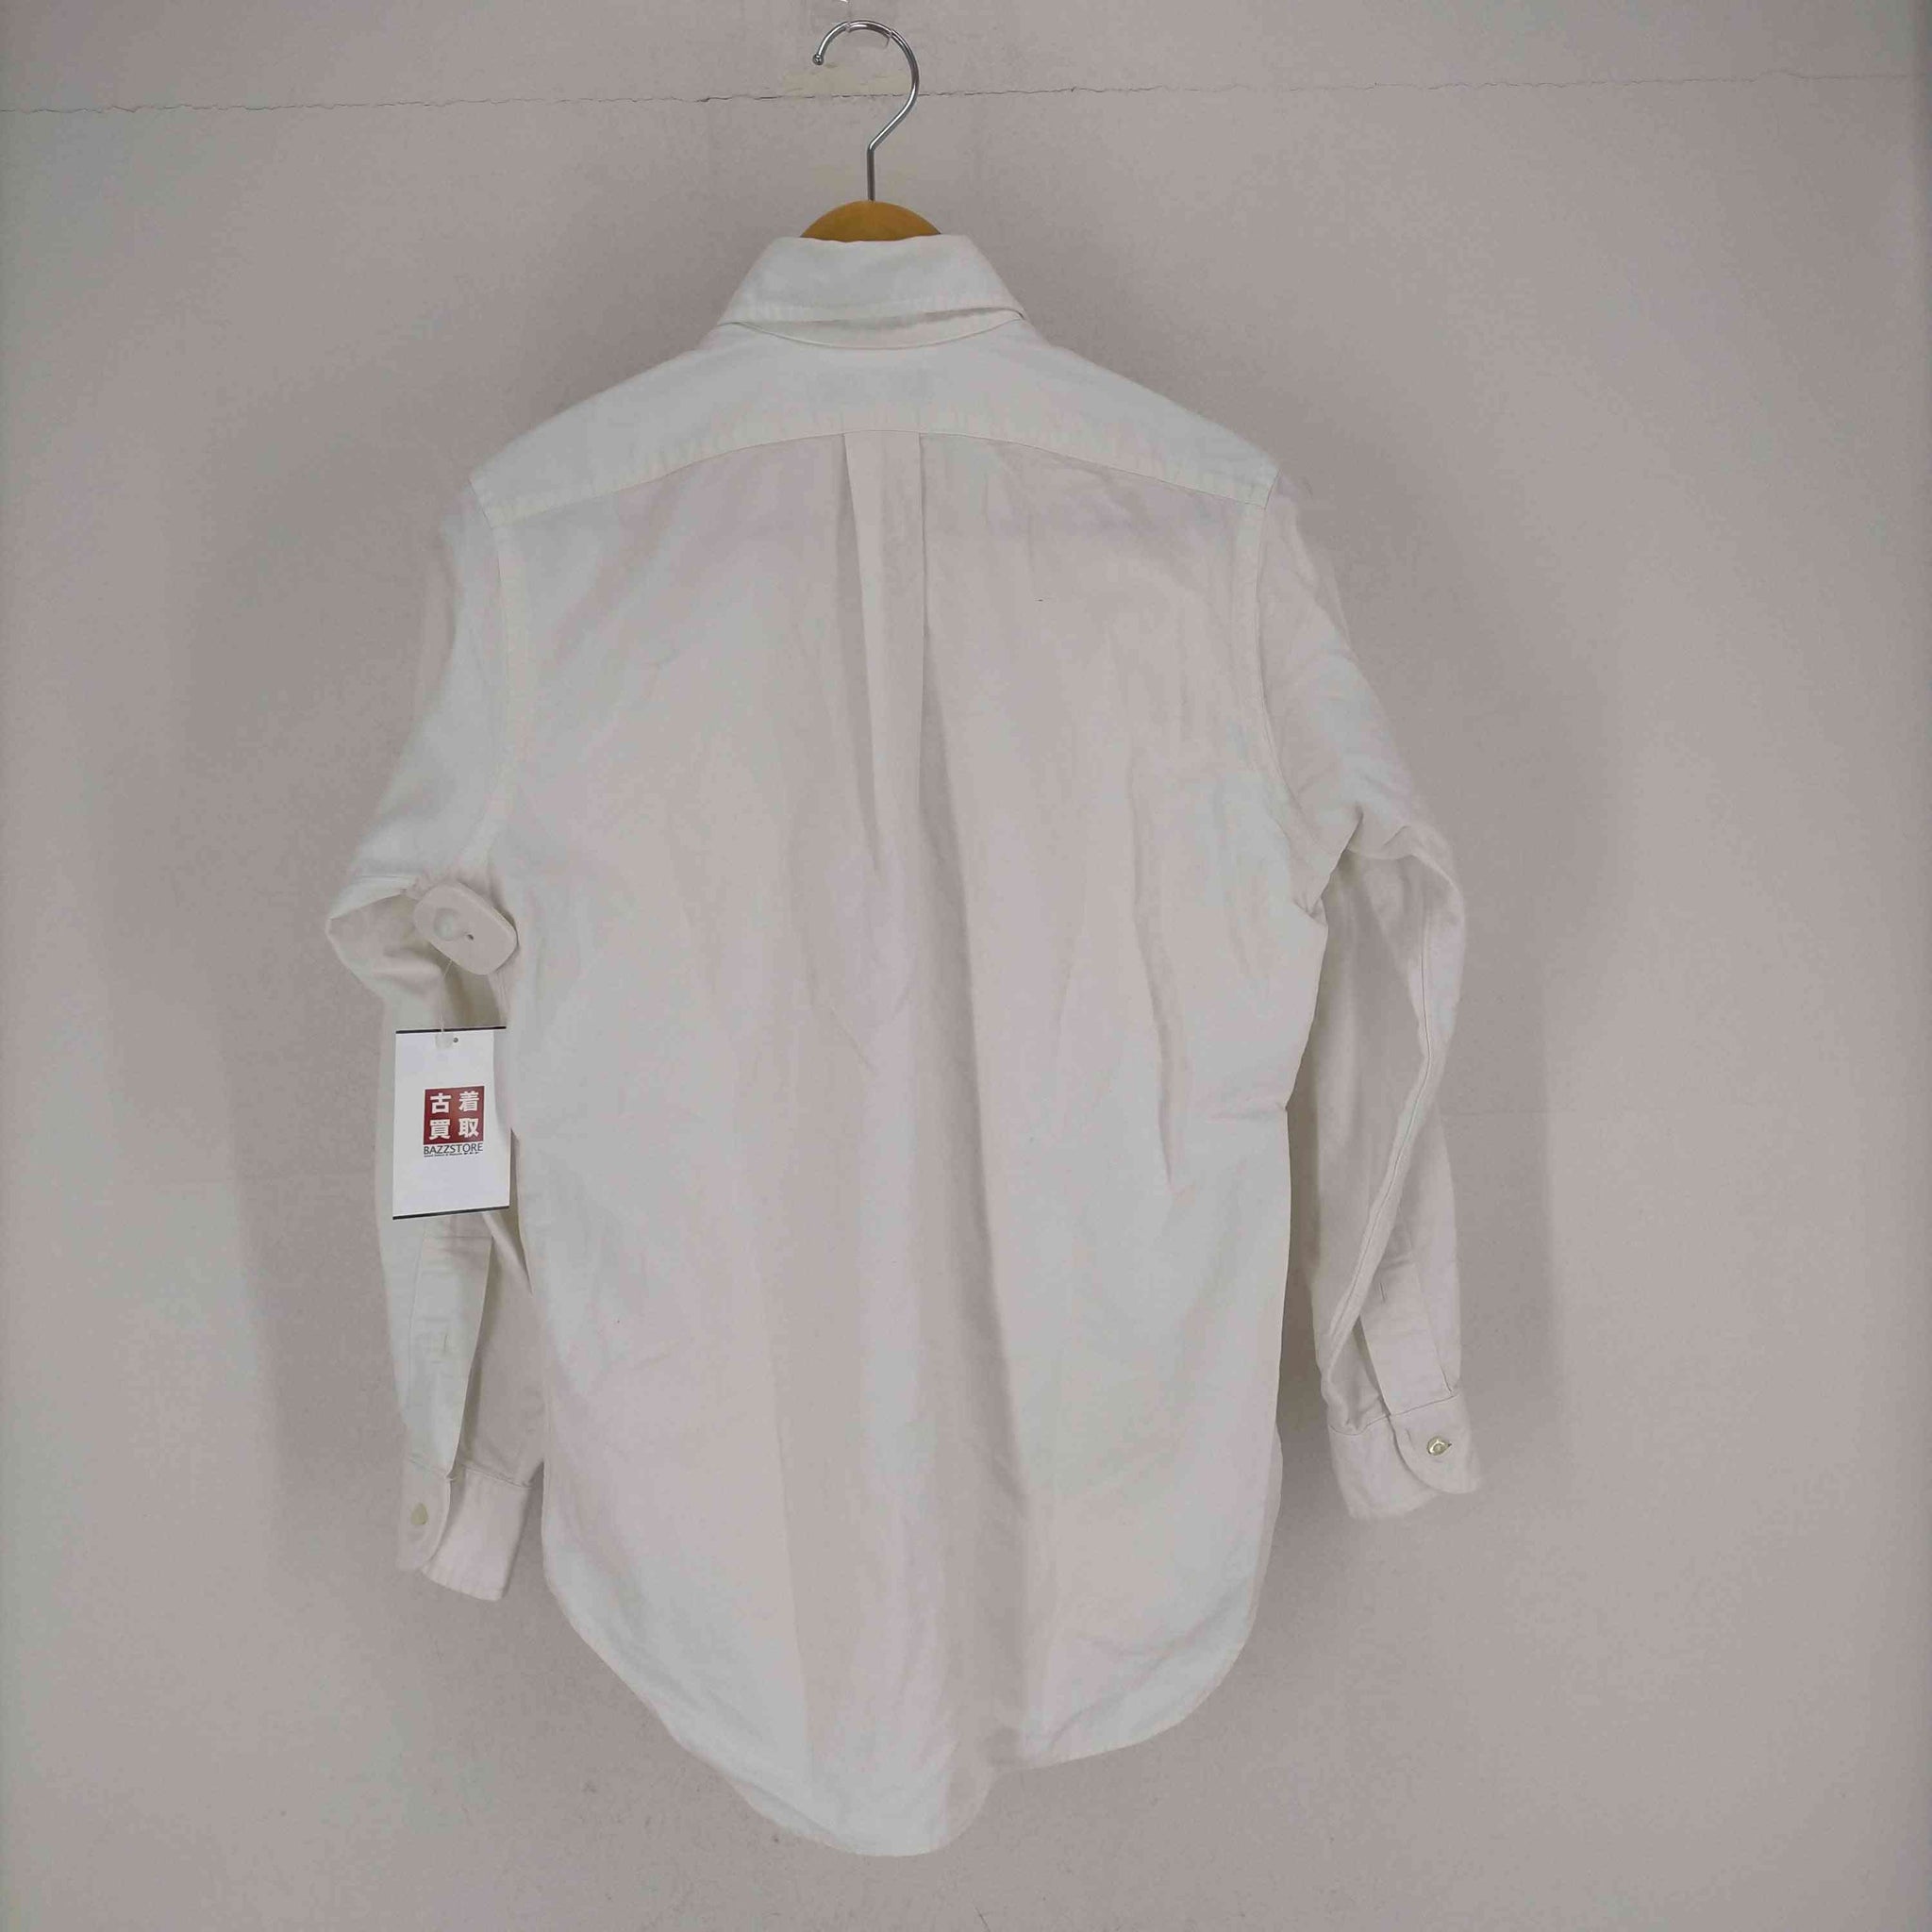 individualized shirts(インディヴィジュアライズドシャツ)Woven OF Imported USA製 プルオーバーシャツ